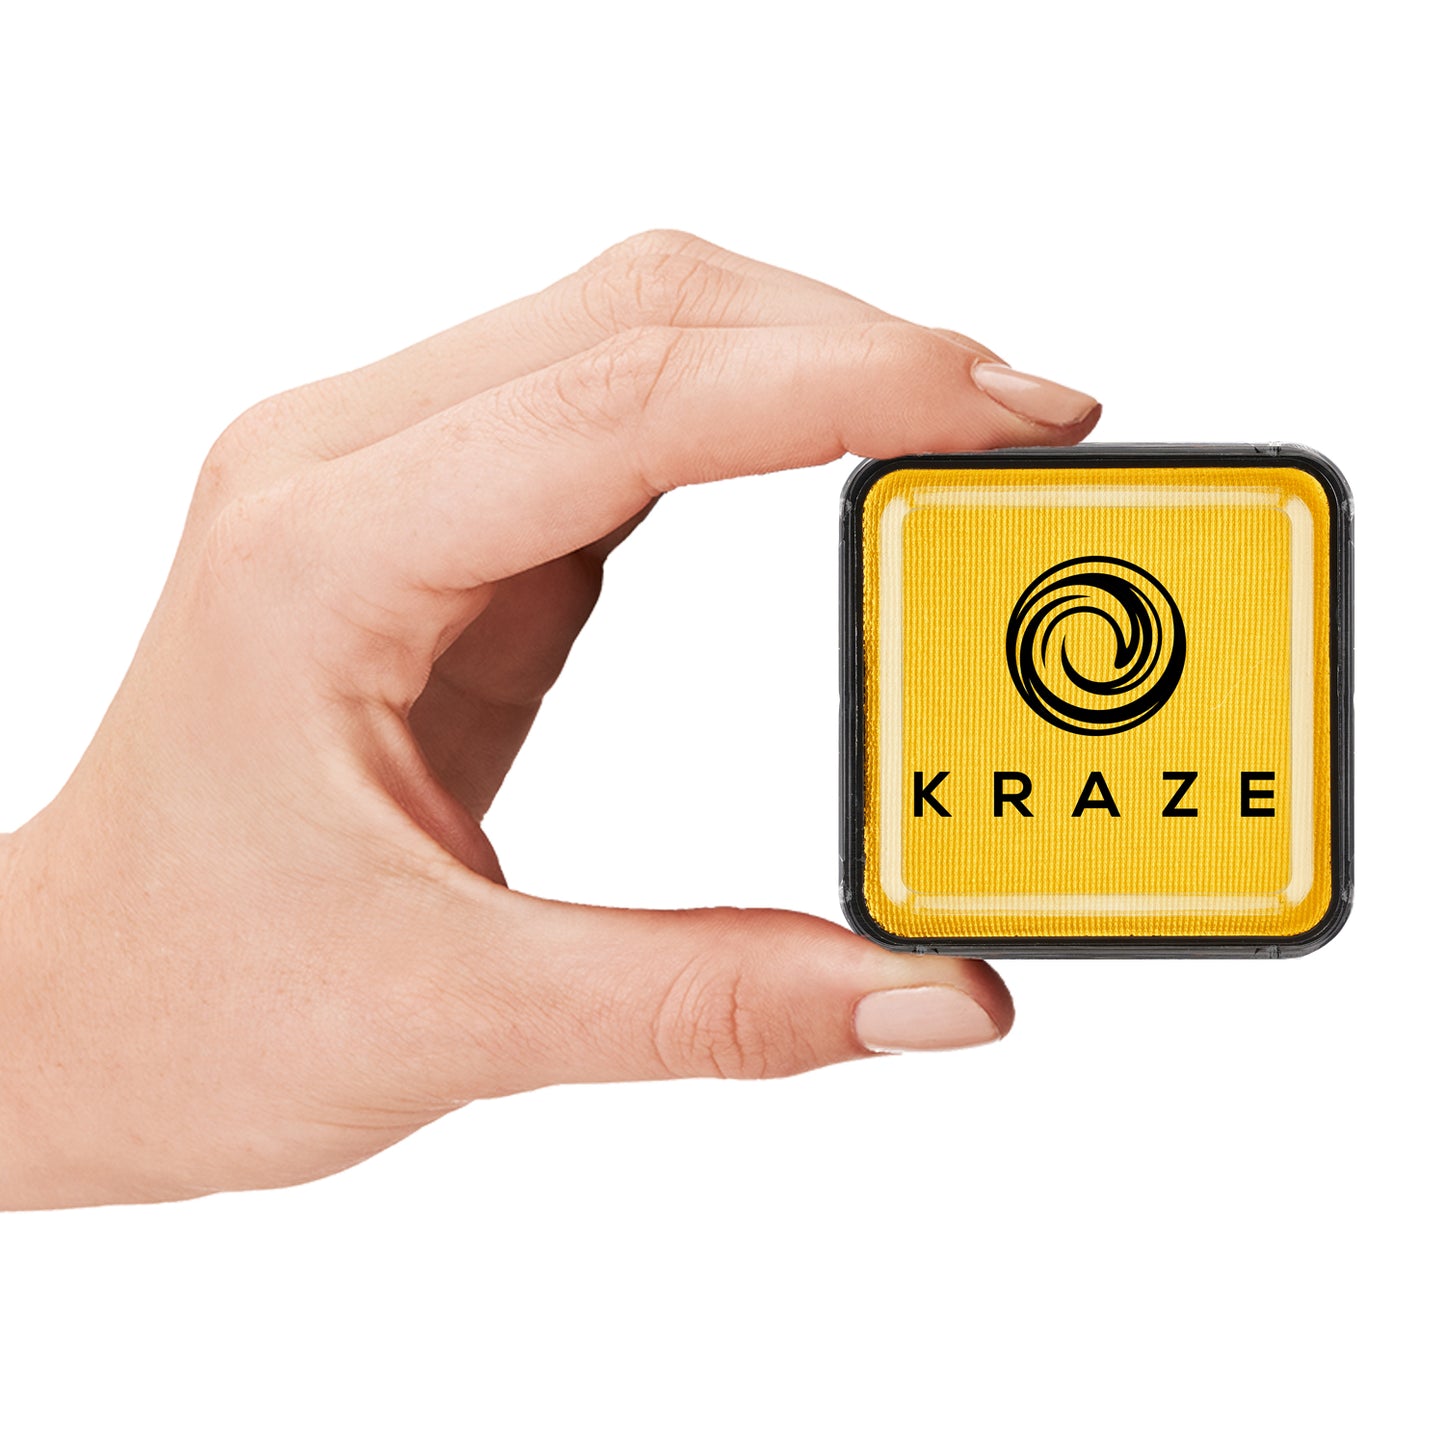 Kraze FX Face & Body Paint - Yellow (25 gm)